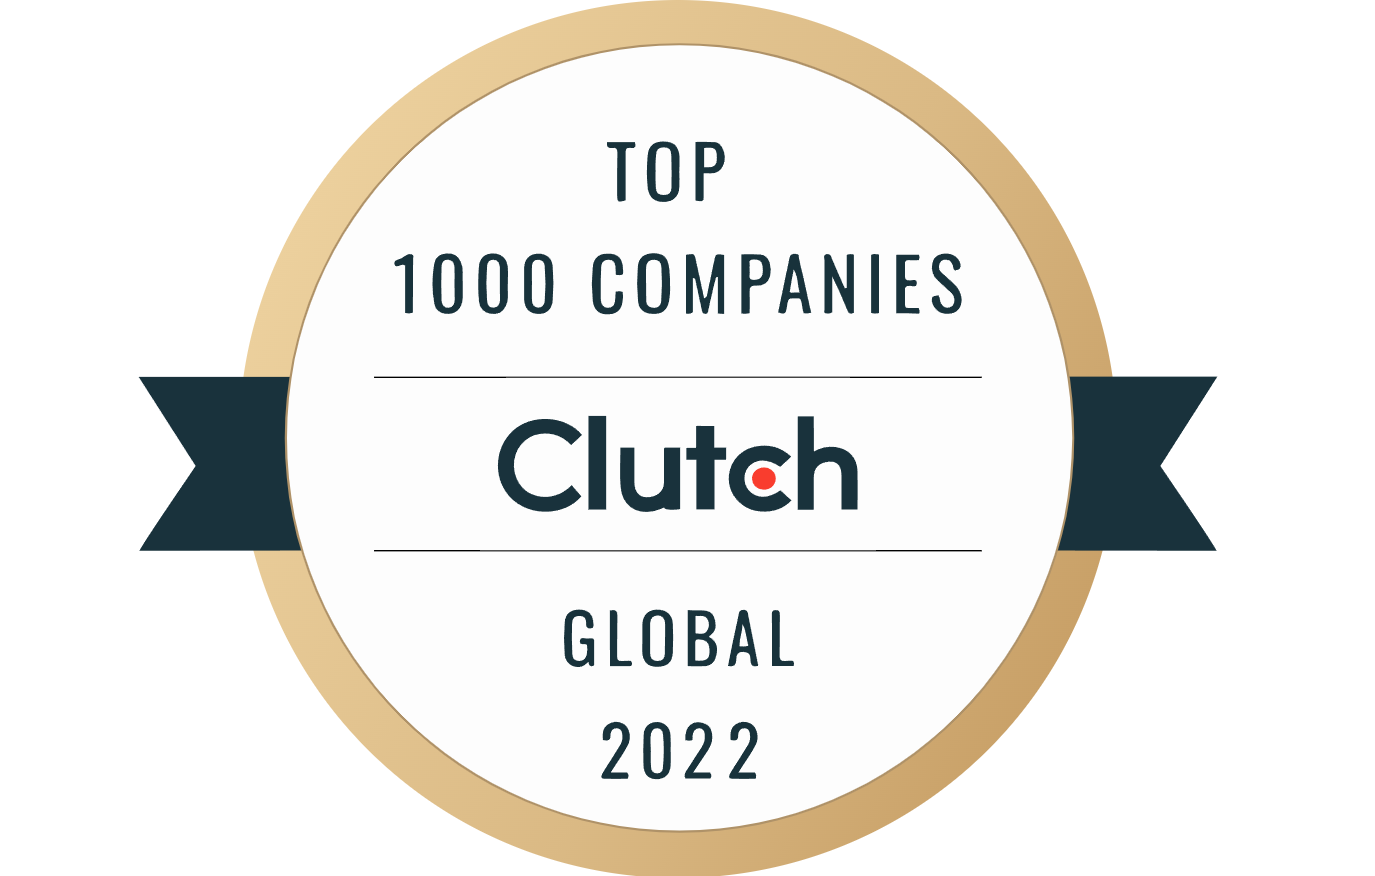 Top 1000 companies Award